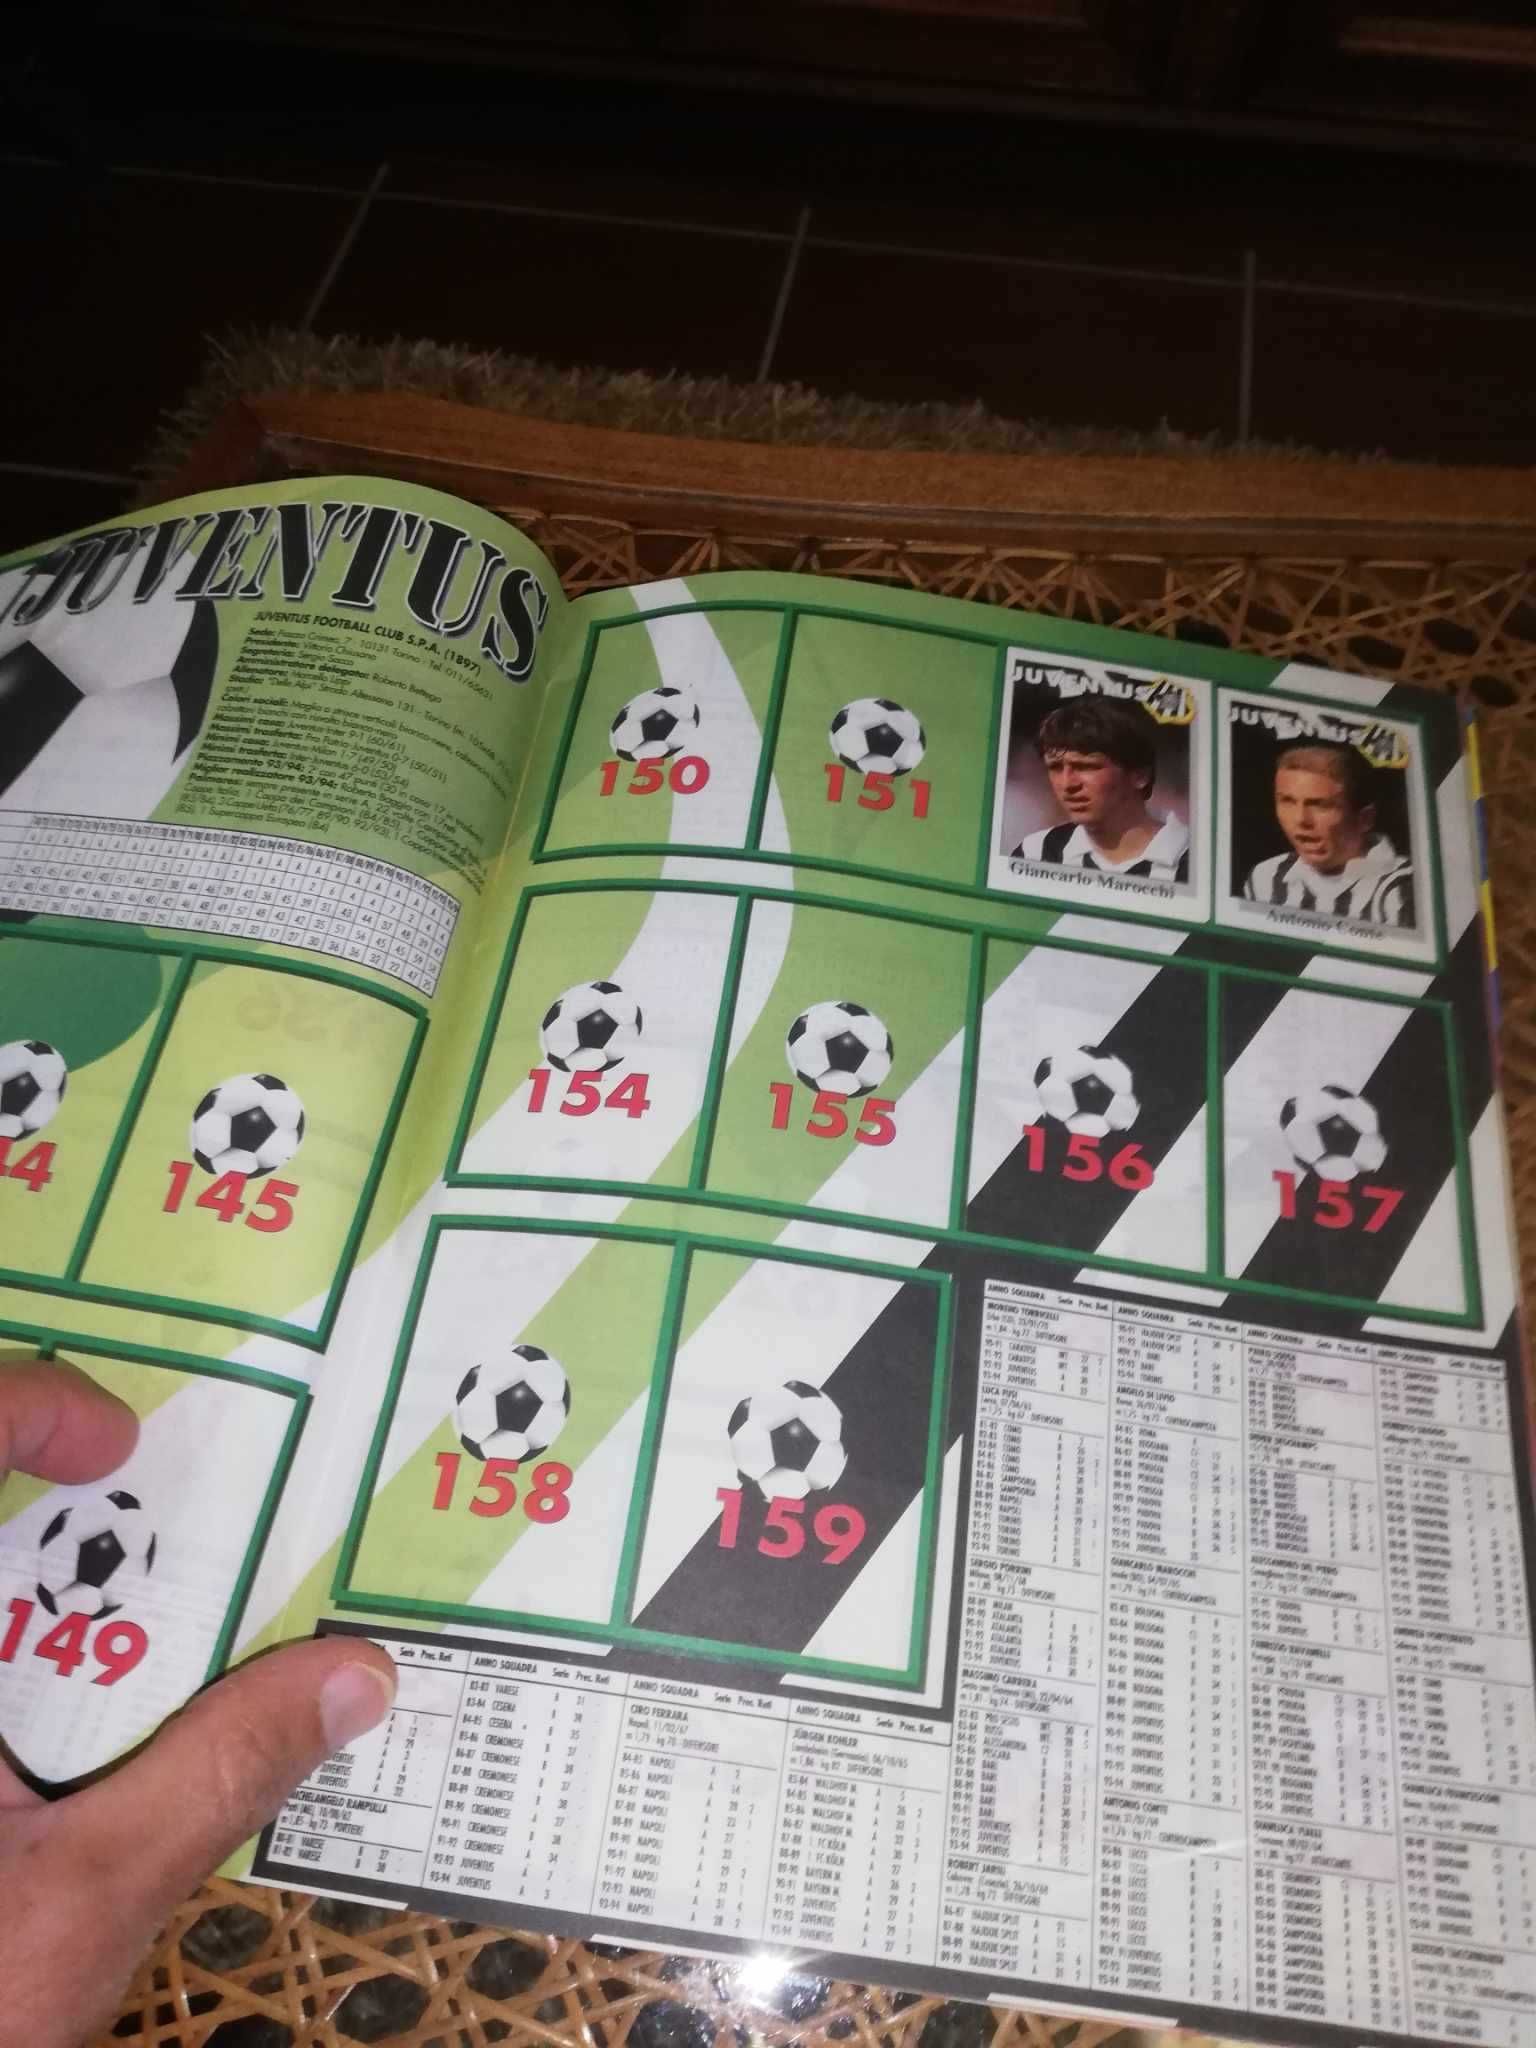 Cadernetas de futebol incompletas (anos 1995 e 1996)